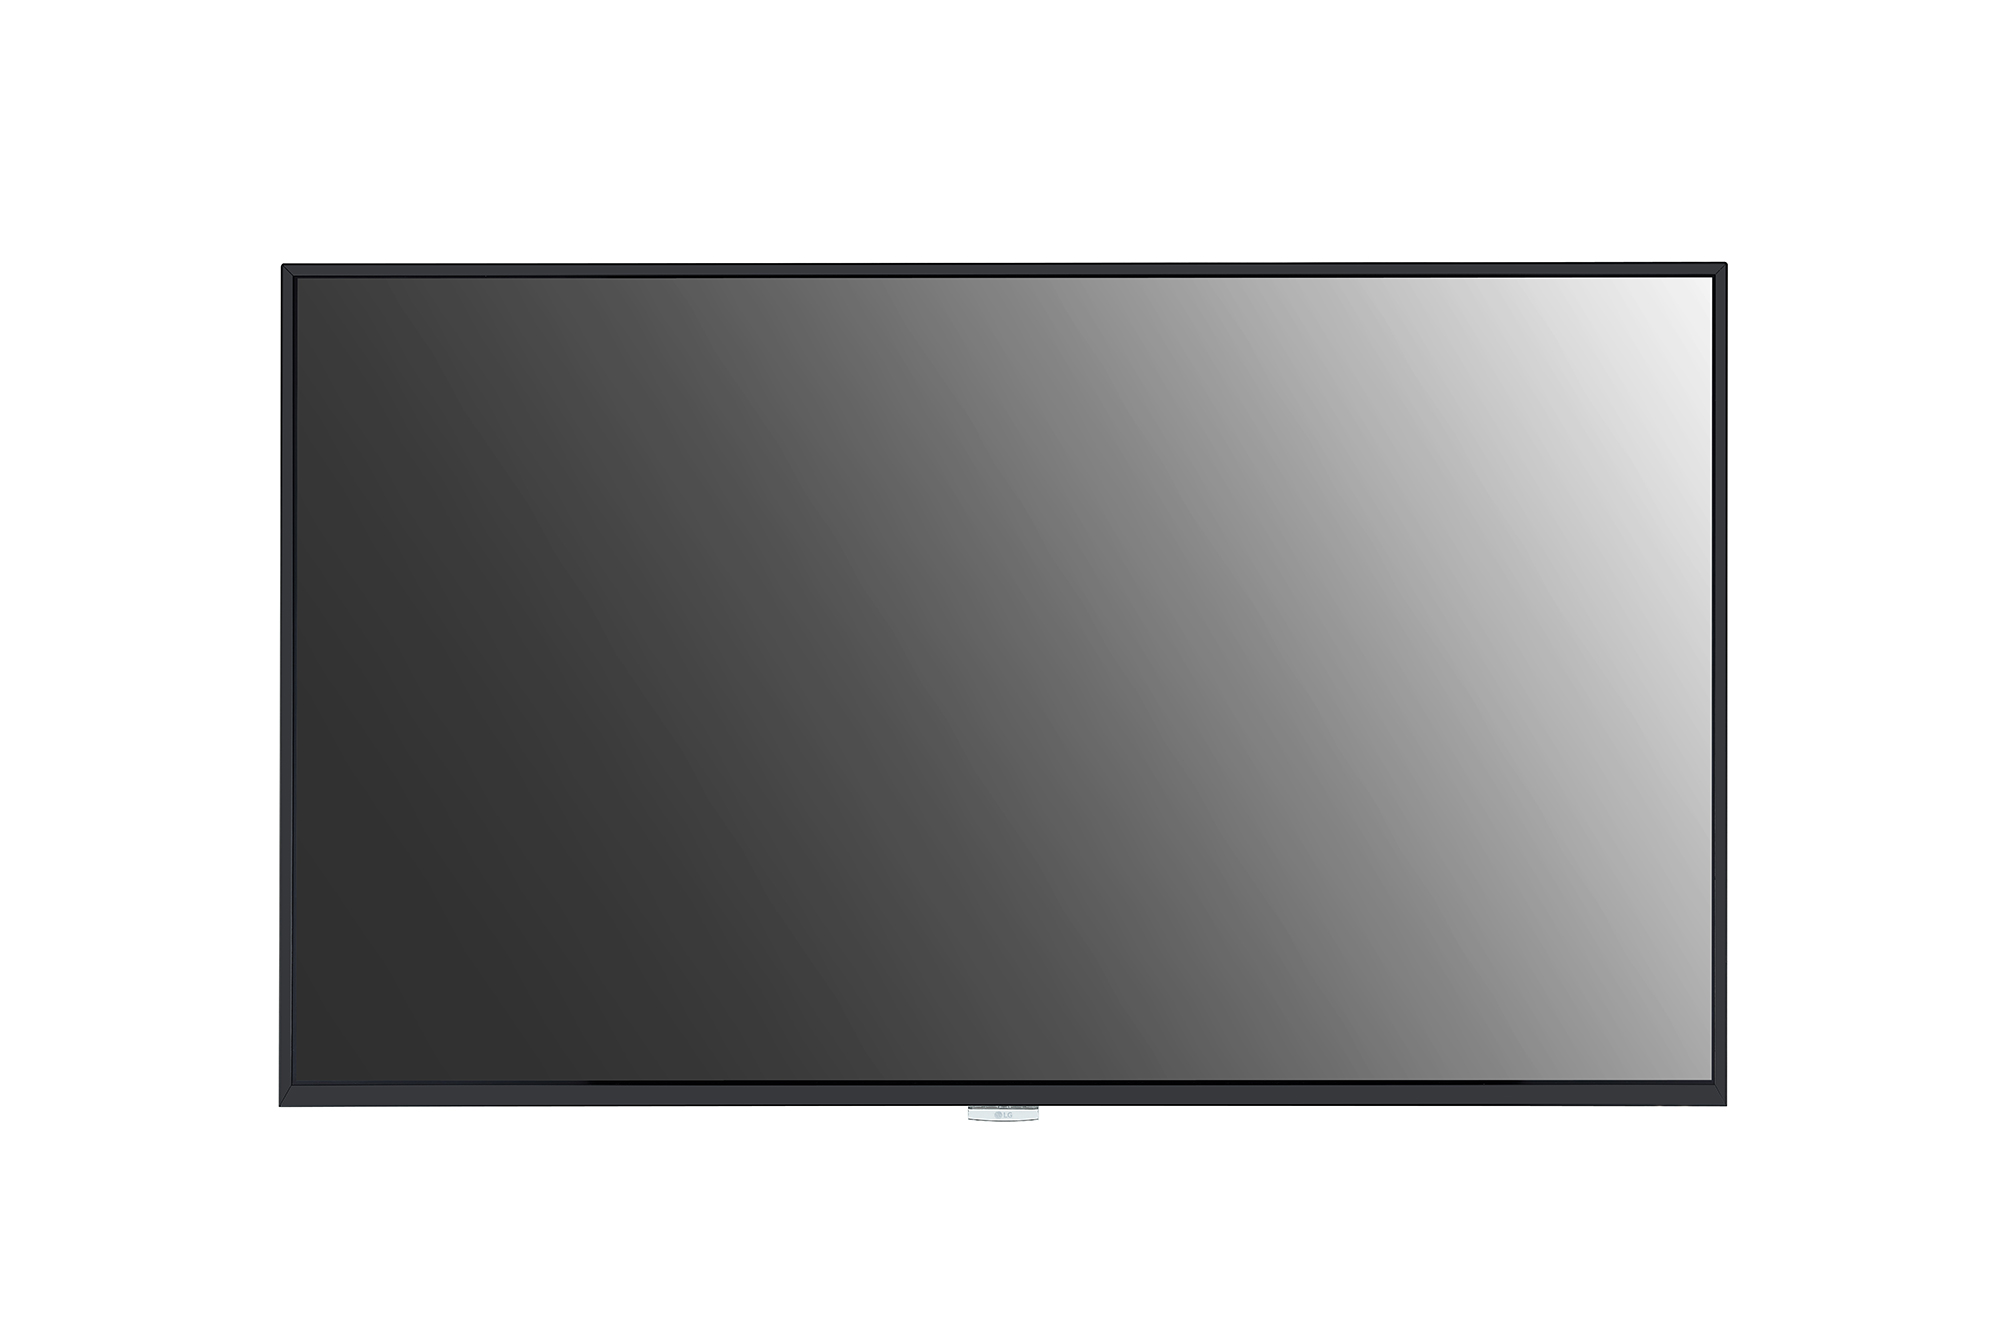 Экран для телевизора lg. ЖК панель LG 98uh5f. Панель LG 65uh5f-b. ЖК панель LG 55uh5c-b. Led панель LG 32sm5ke-b.